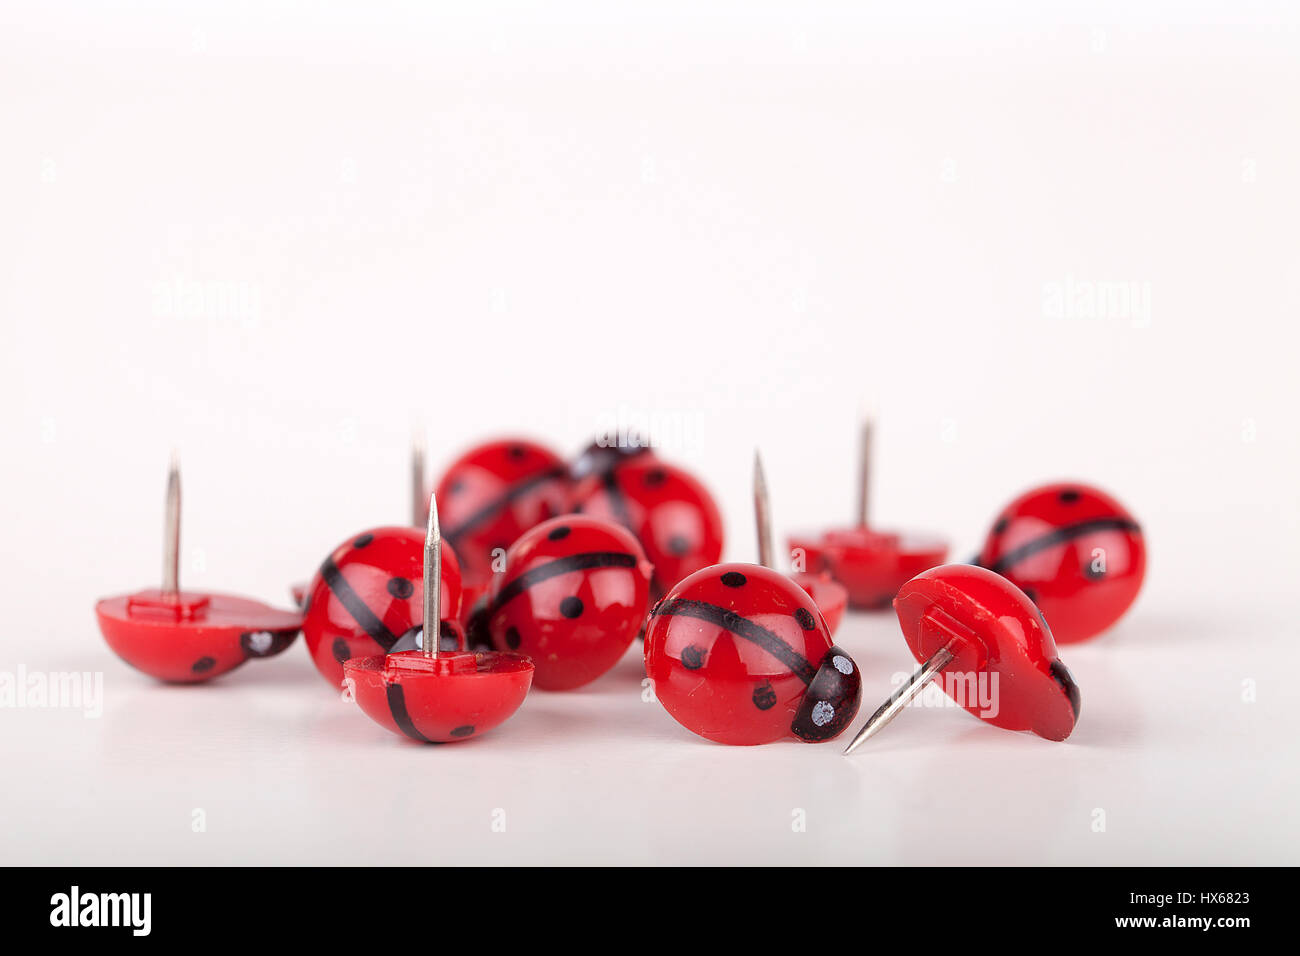 Red ladybug pushpin on a white surface. Ladybird thumbtacks isolated on white background. Stock Photo